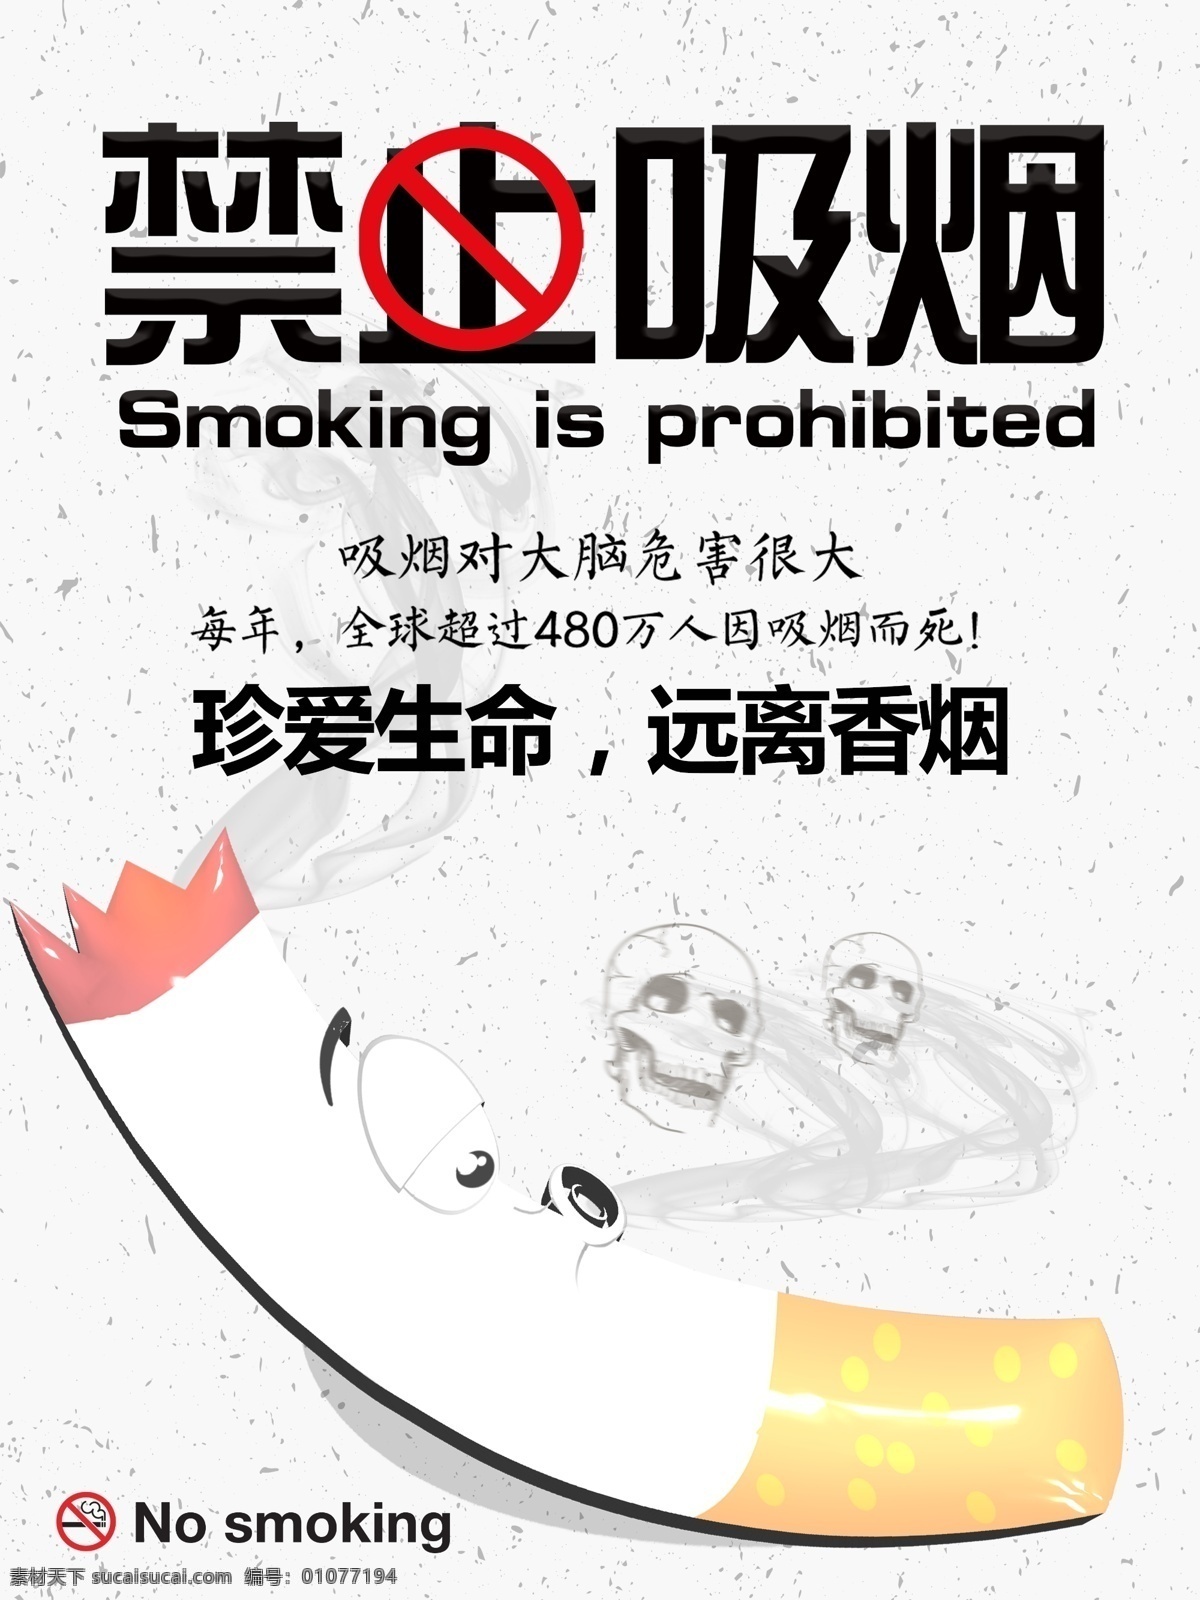 禁止吸烟标志 禁止吸烟门牌 禁止吸烟样式 禁止吸烟模版 温馨提示